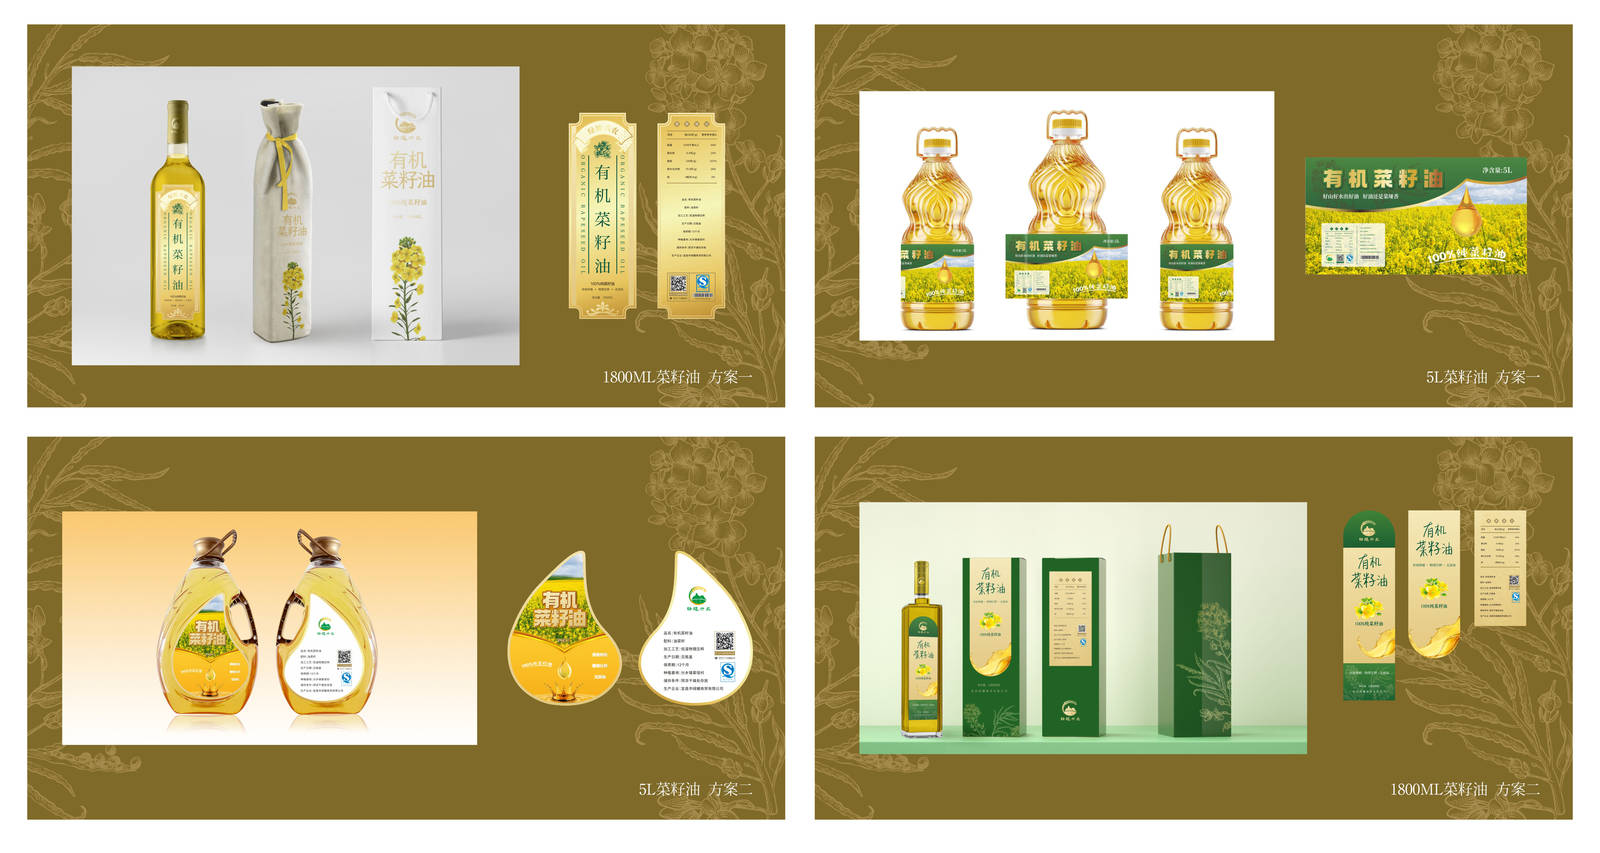 绿耀有机菜籽油形象系列瓶子包装设计-第2张